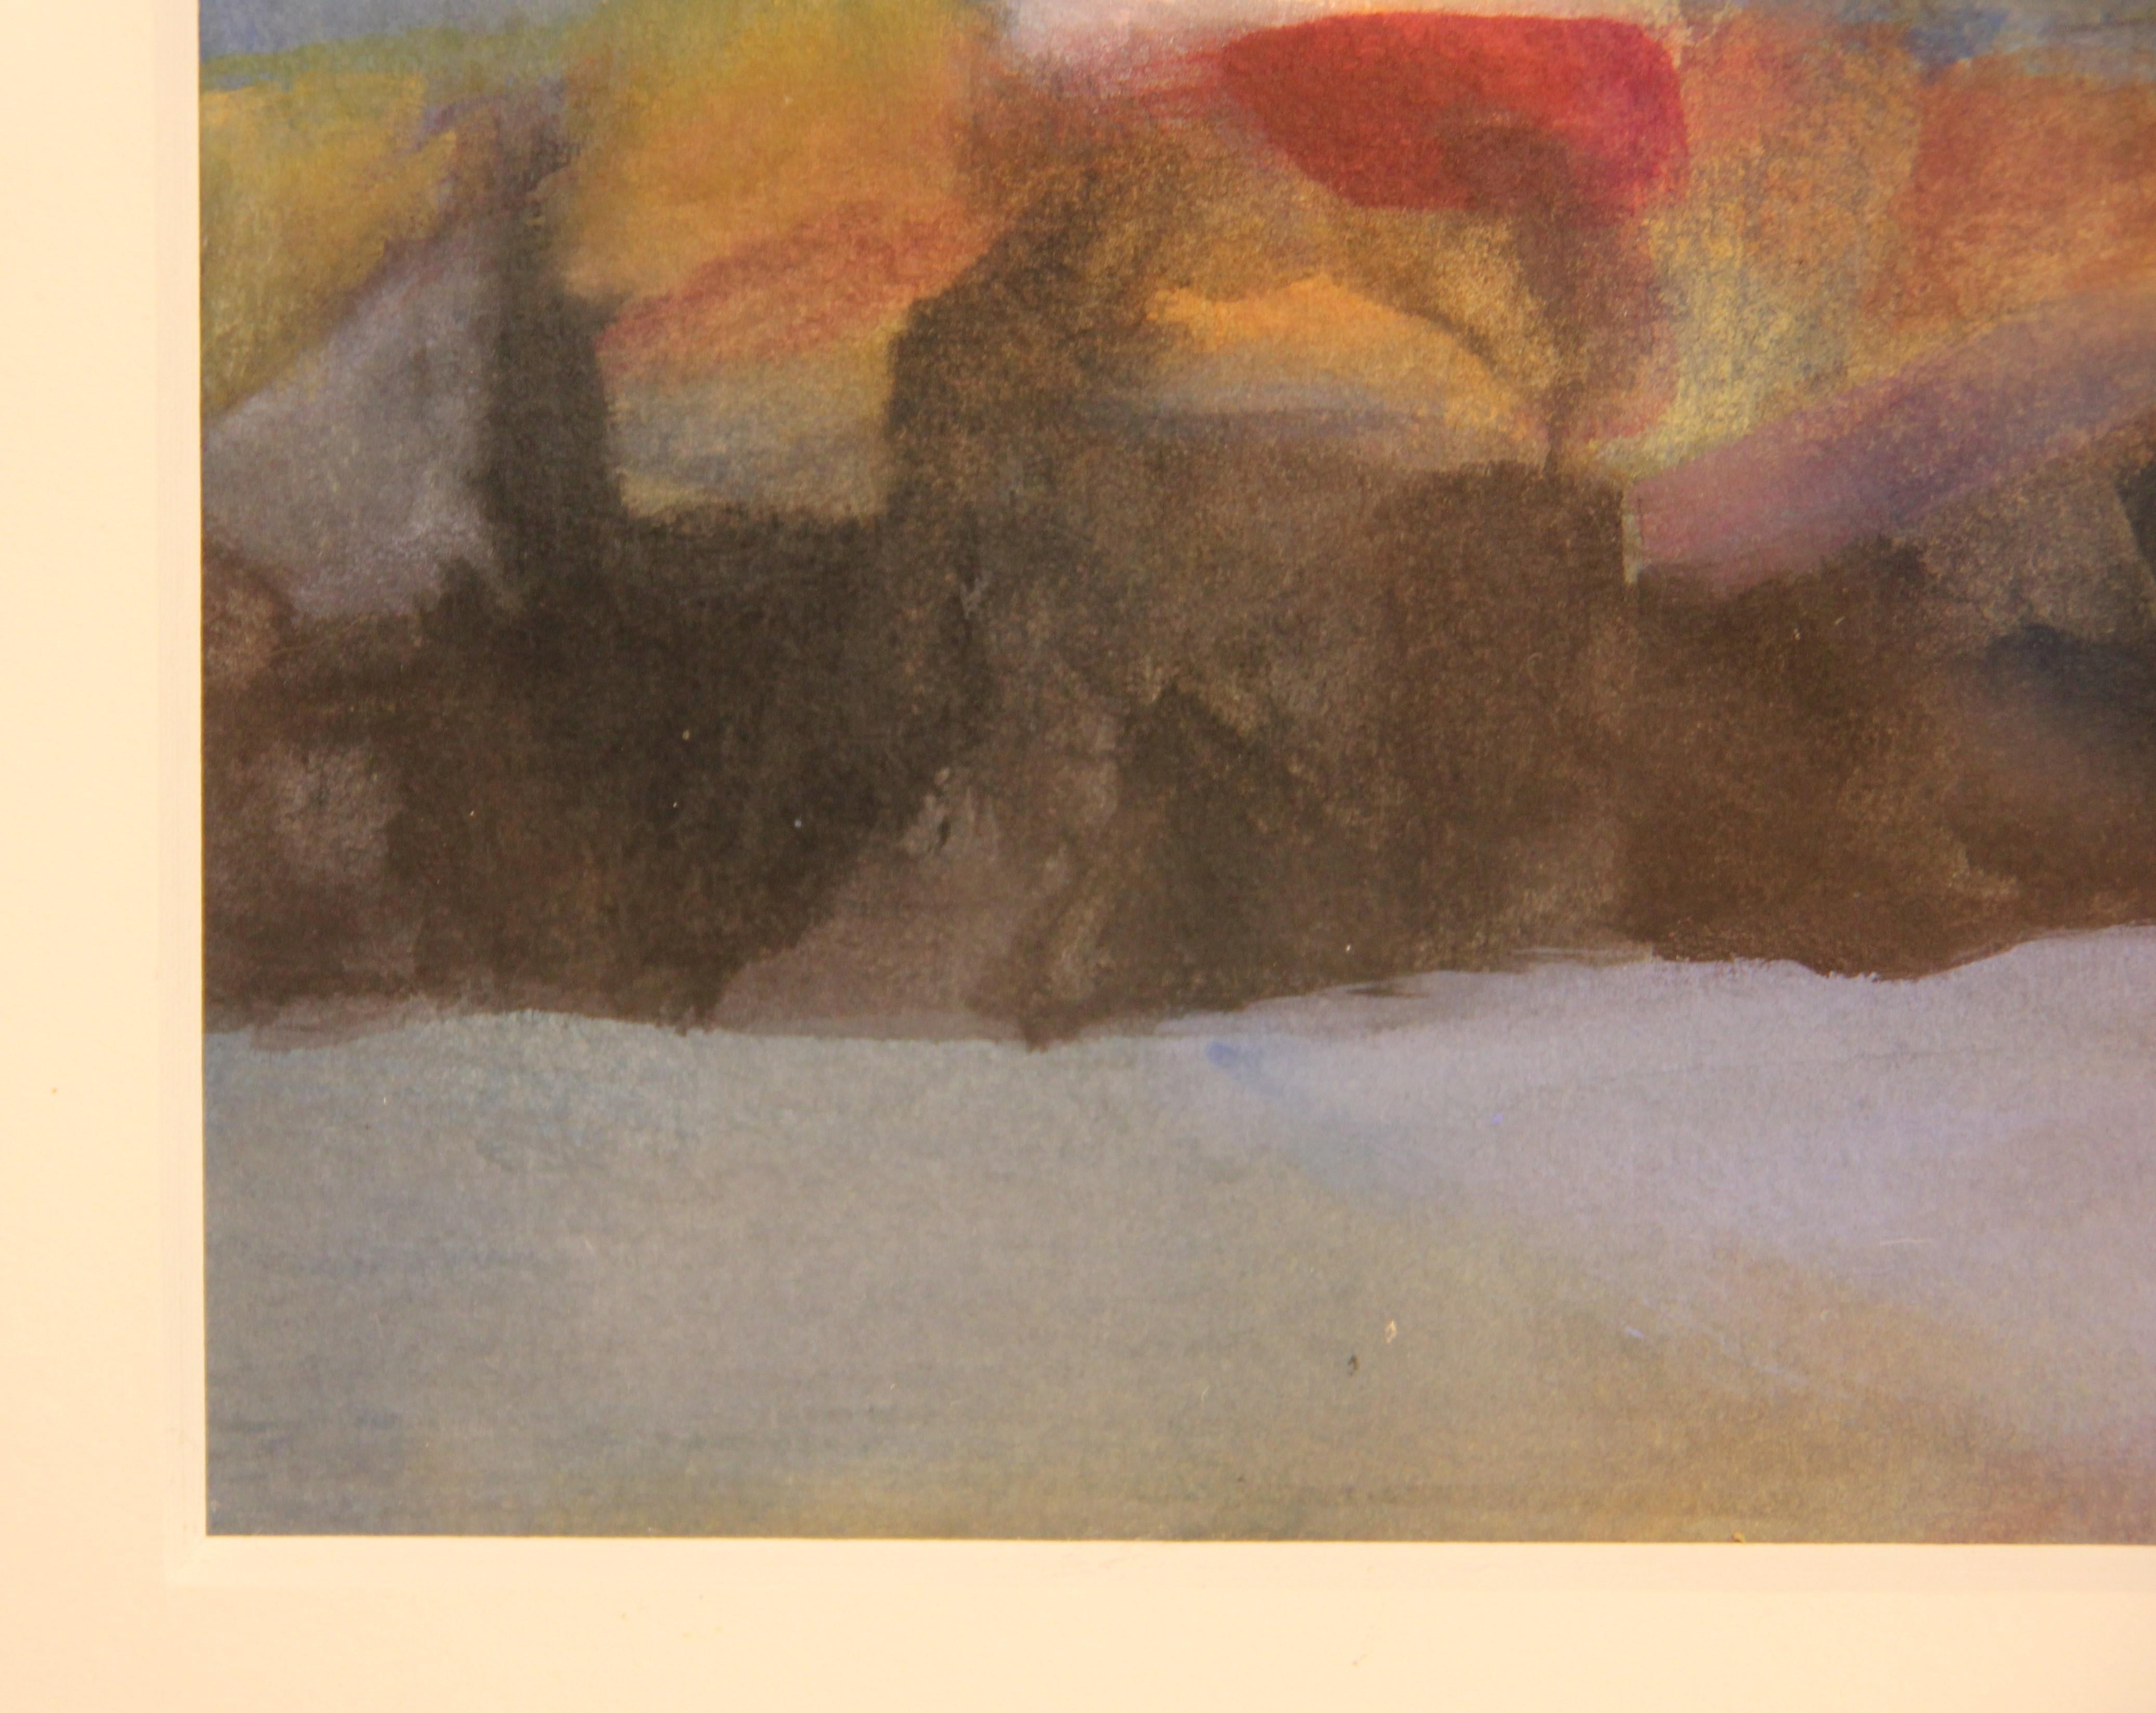 Abstraktes, blau getöntes Gouache-Gemälde auf Papier, das eine Meereslandschaft mit einem weißen Leuchtturm und einer roten Scheune darstellt, möglicherweise in Neuengland. Signiert vom Künstler unten rechts. Mattiert und gerahmt in einem weißen